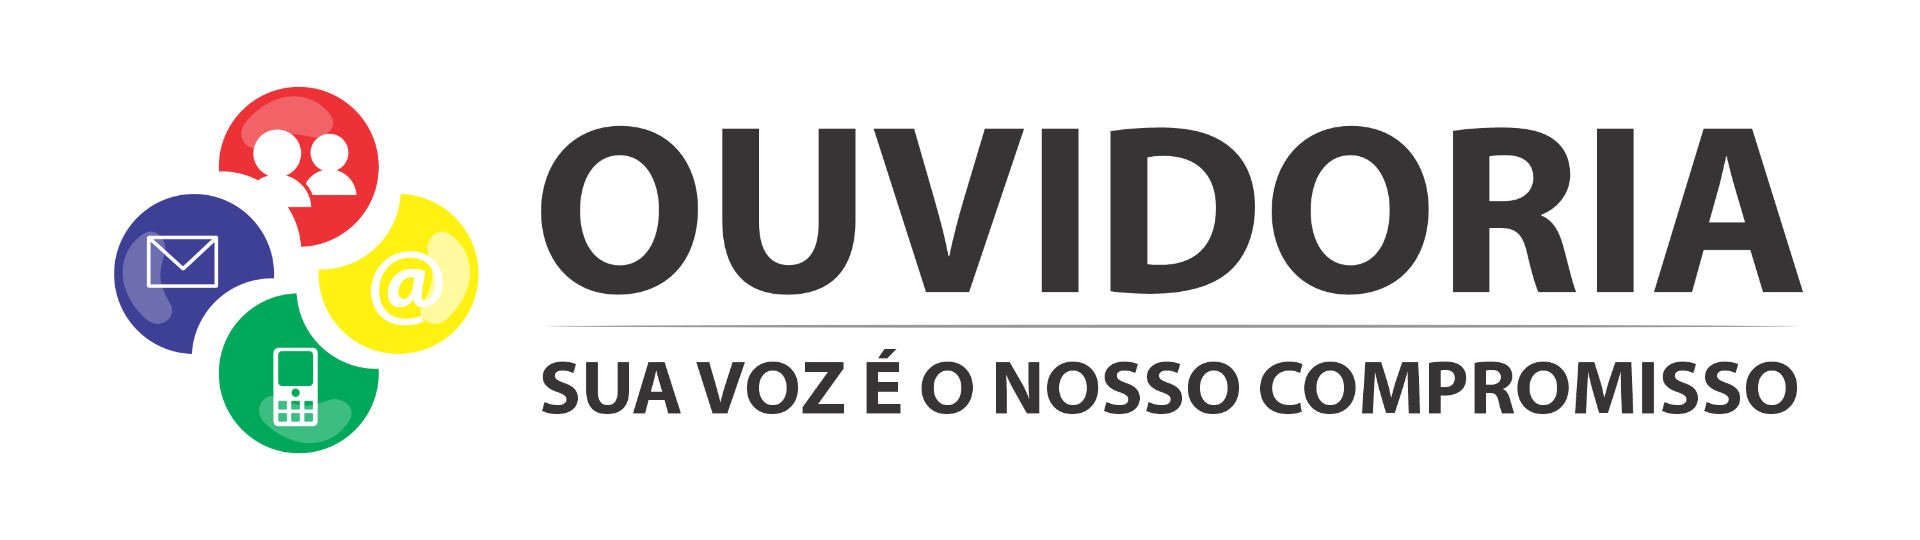 Logo - Ouvidoria da Sudeco - Horizontal.png